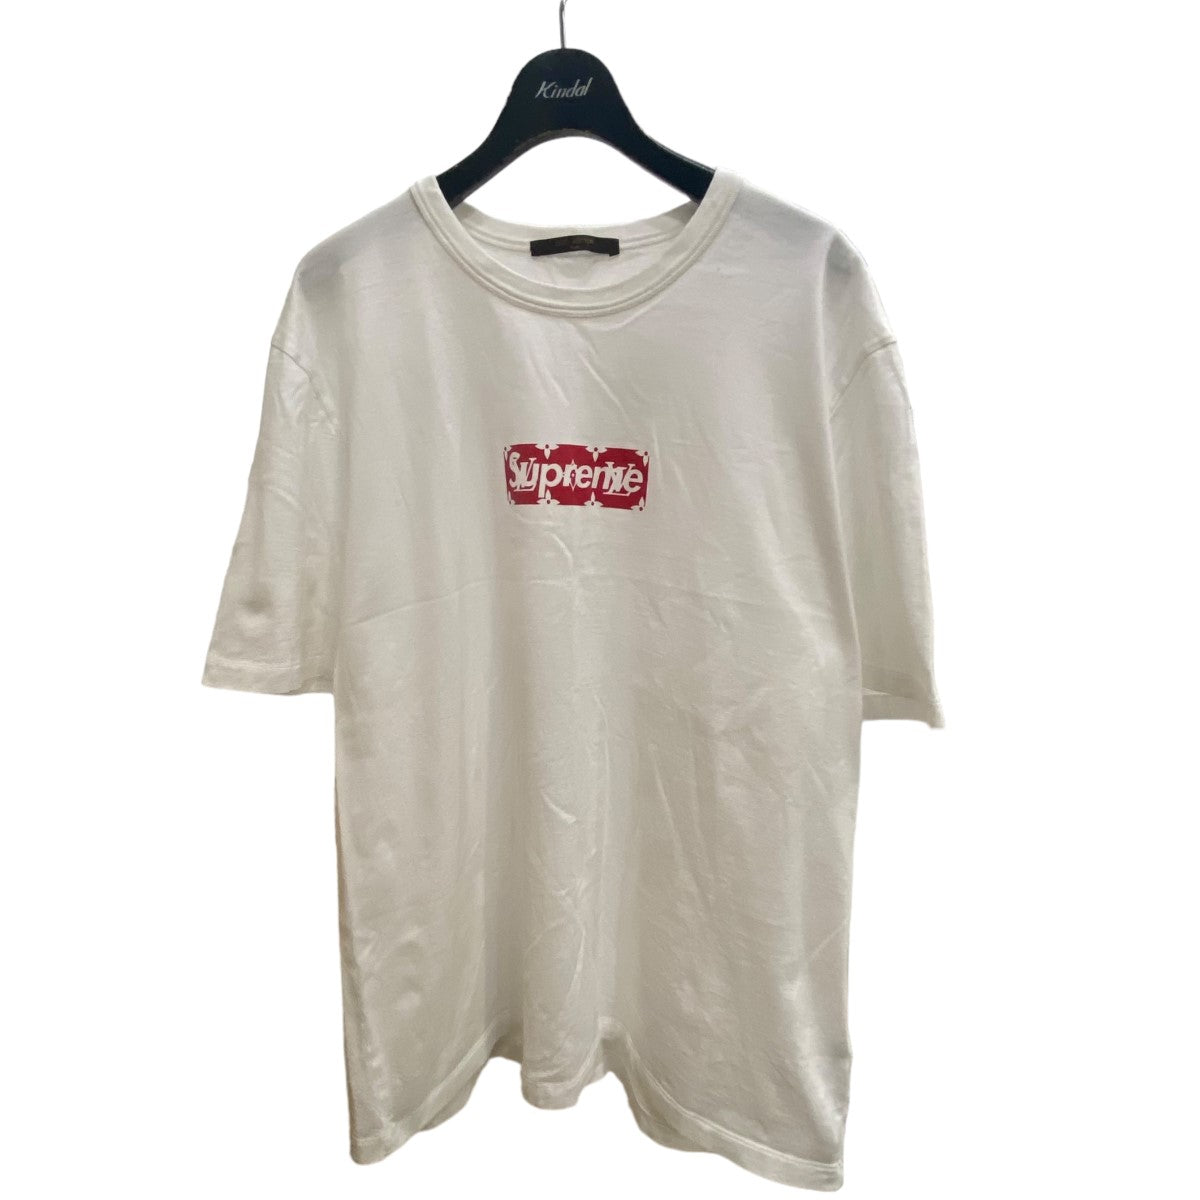 SUPREME×LOUIS VUITTON ボックスロゴTシャツ ホワイト×レッド サイズ 